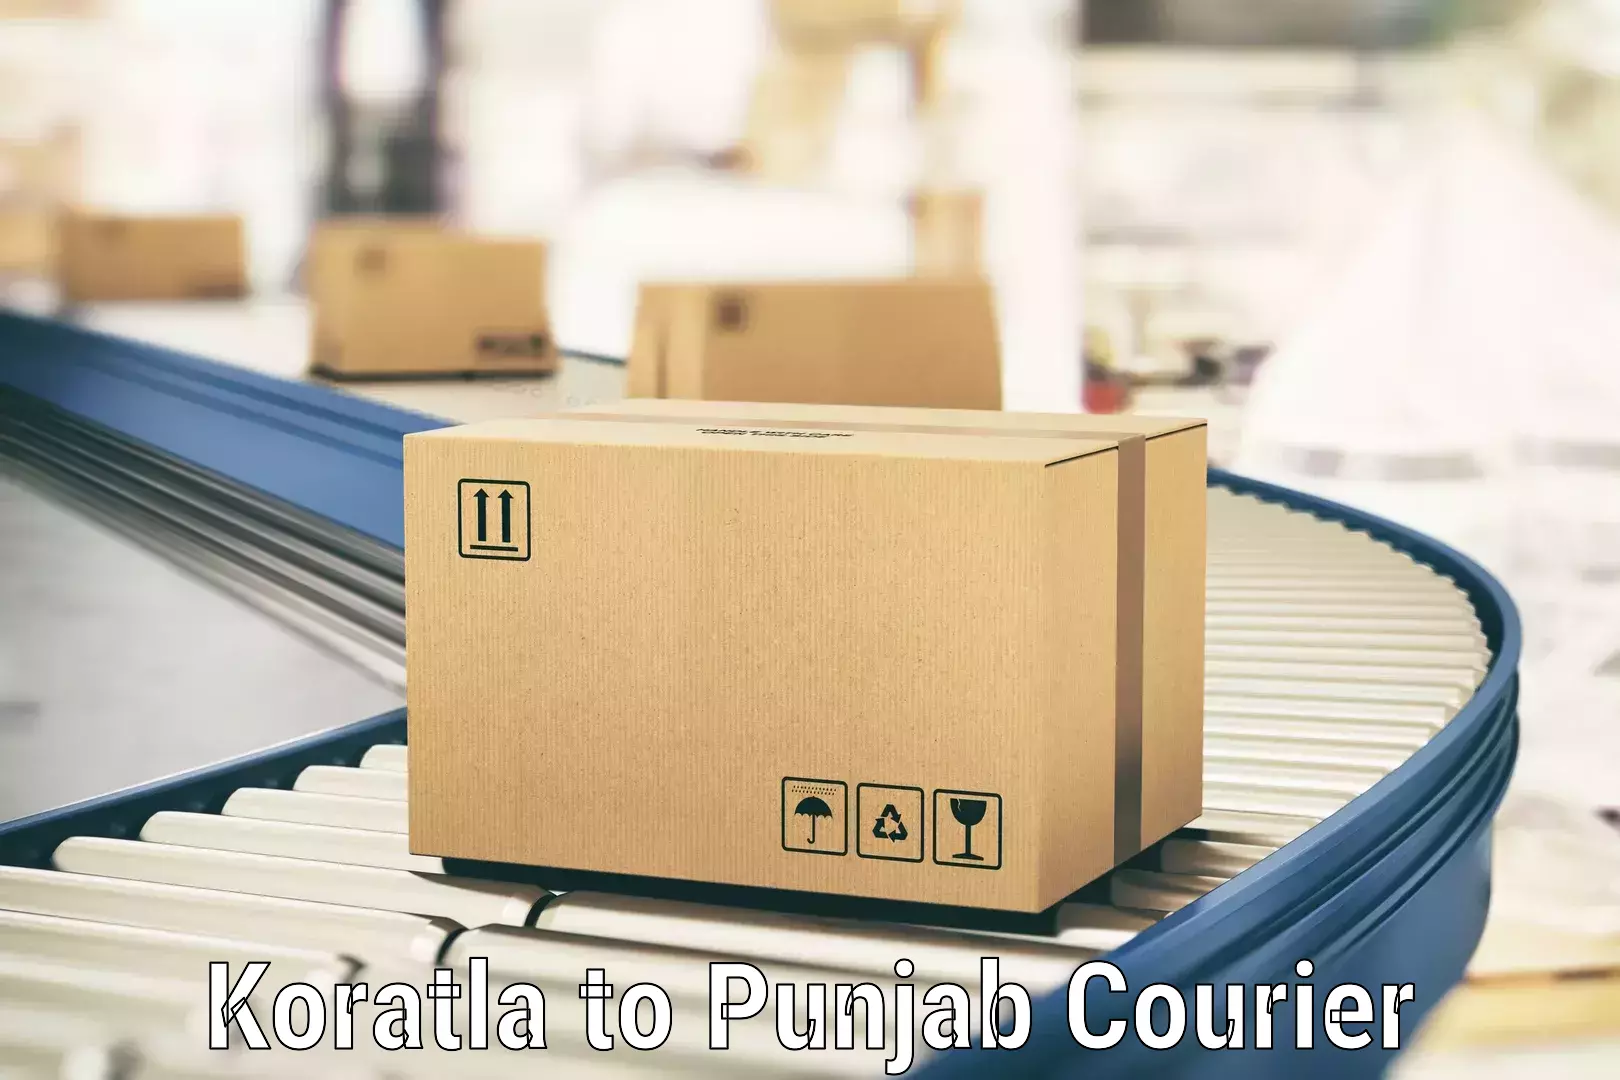 Global shipping networks Koratla to Zirakpur